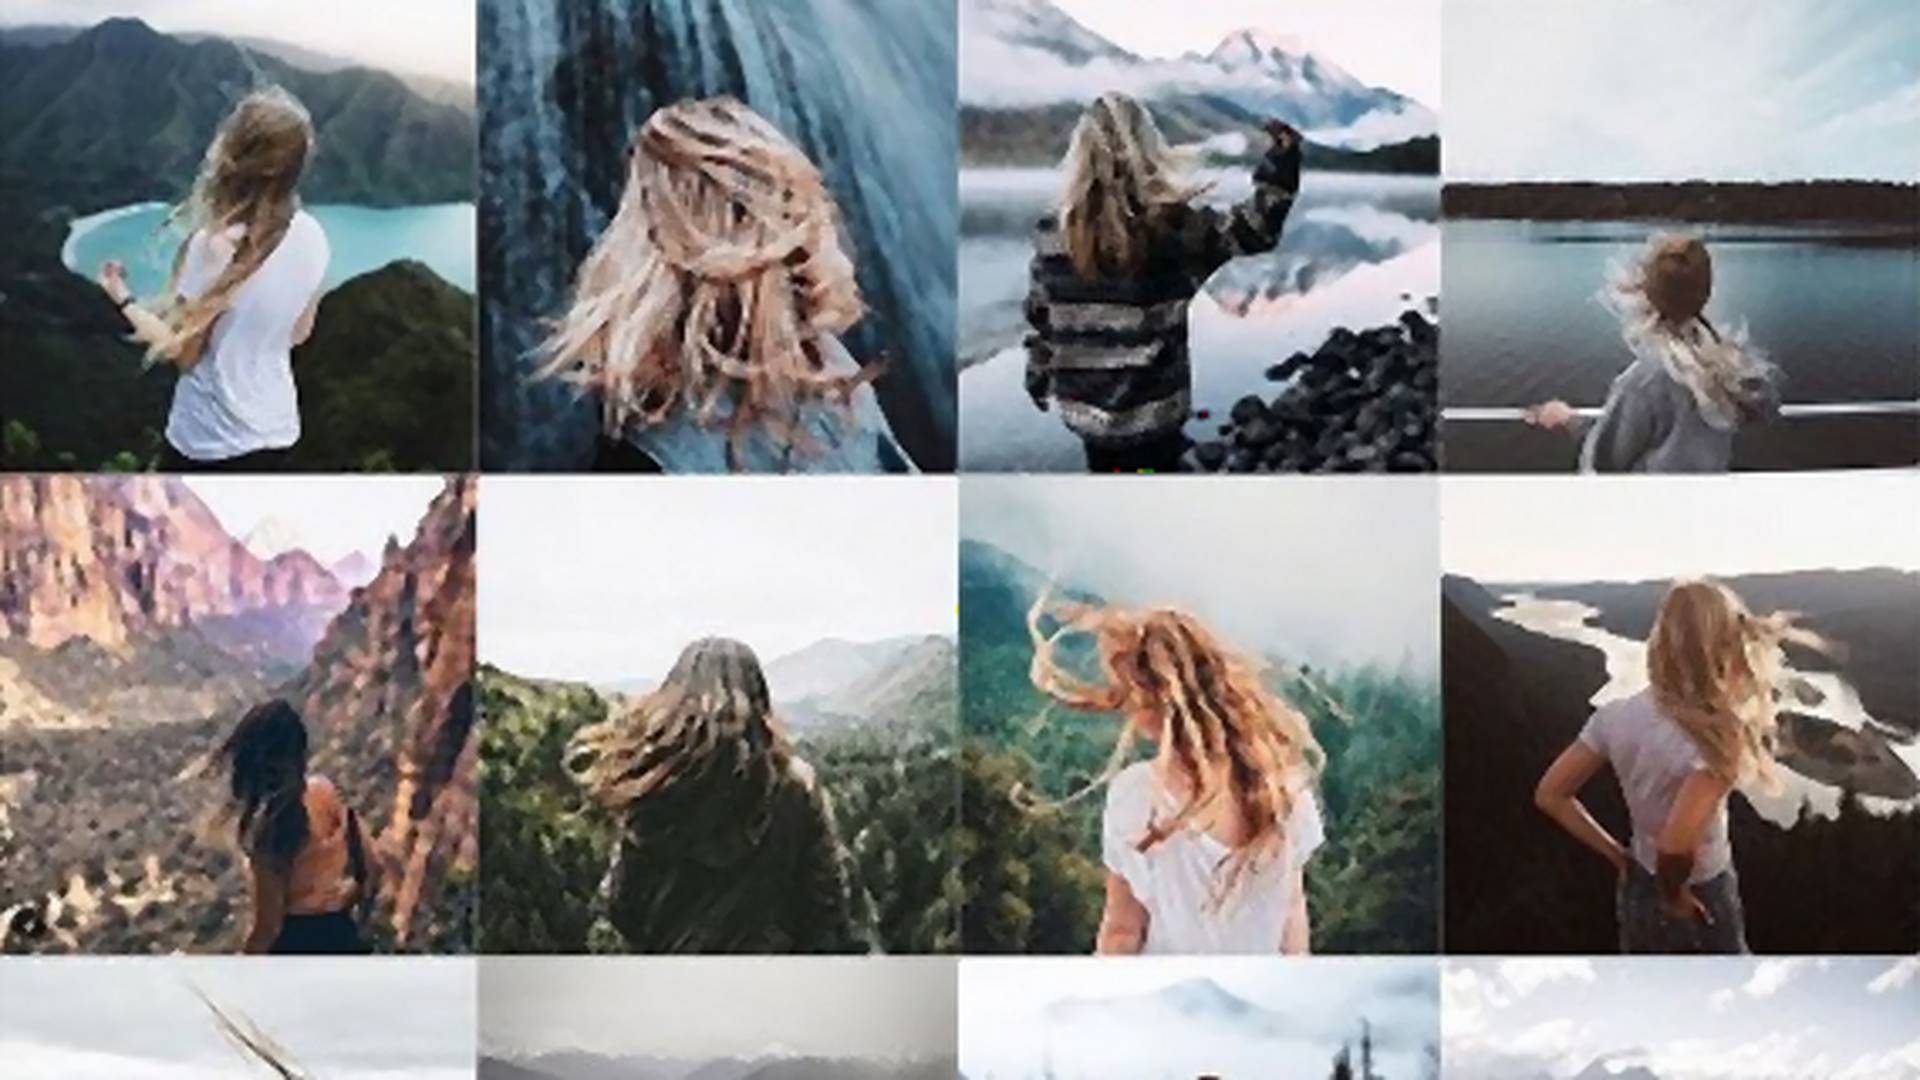 Devojka koja je detaljnom analizom dokazala smrt originalnosti na Instagramu